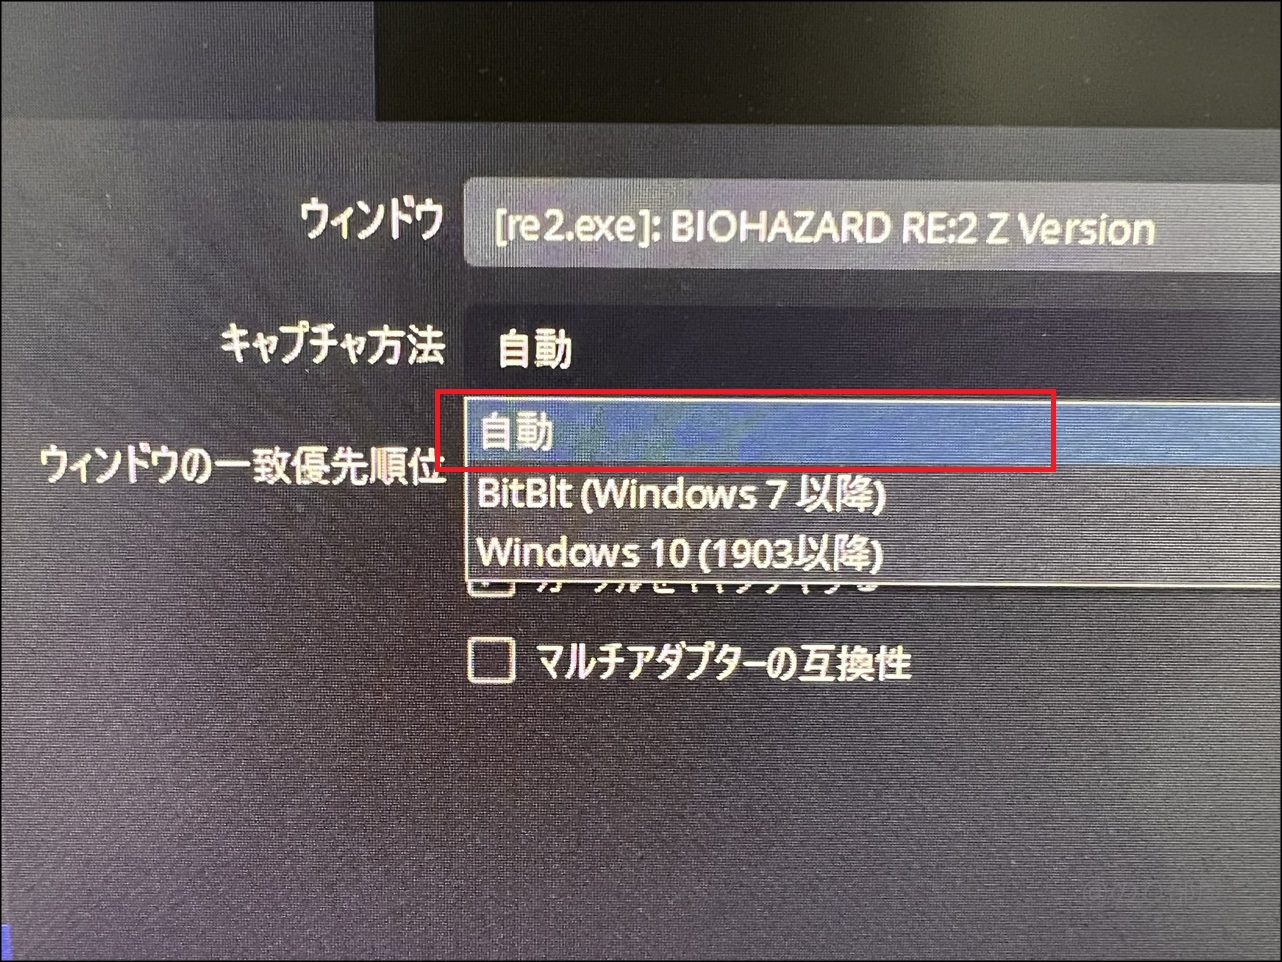 キャプチャ方法を「自動」から「<strong>Windows10（1903以降）</strong>」に変更をします。【1分で解決】OBSでバイオハザードRE2の画面が表示されない場合の対処法。簡単に表示させる方法【BIOHAZARD RE:2ゲーム実況配信】